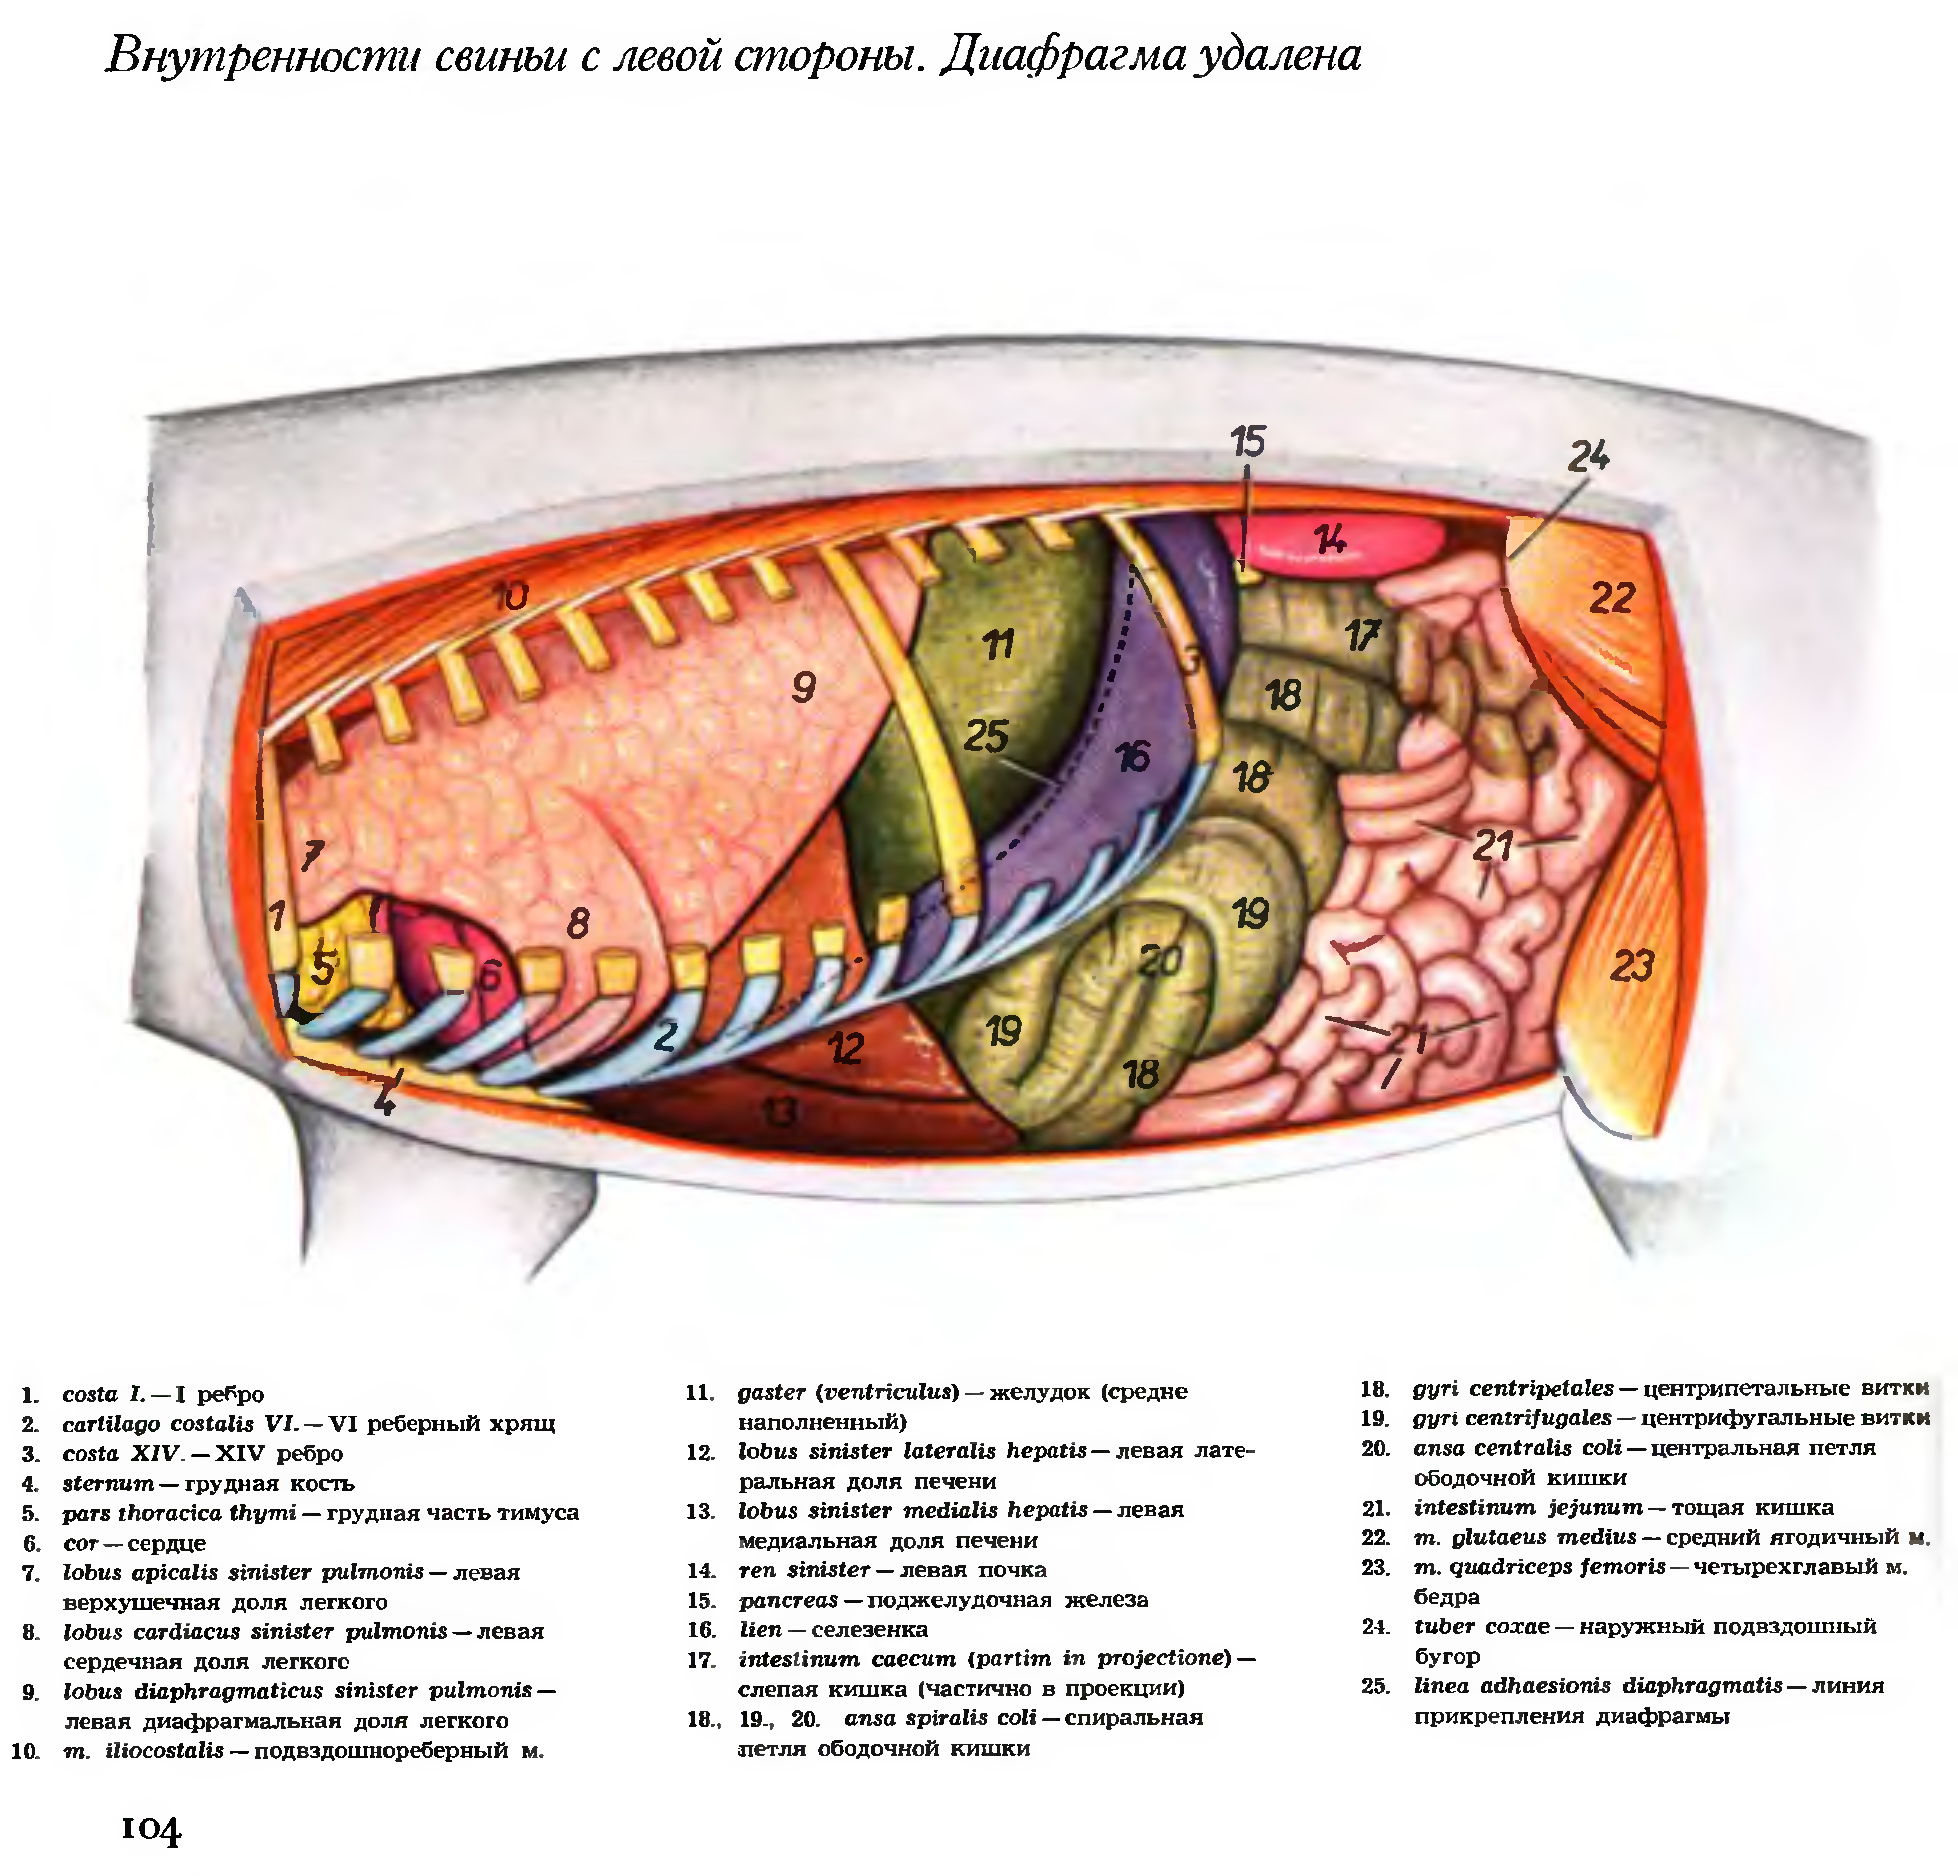 Поджелудочной железы свиньи. Топография органов брюшной полости у свиньи. Топография органов свиньи. Топография внутренних органов с левой стороны свиньи. Топография внутренних органов свиньи с правой стороны.